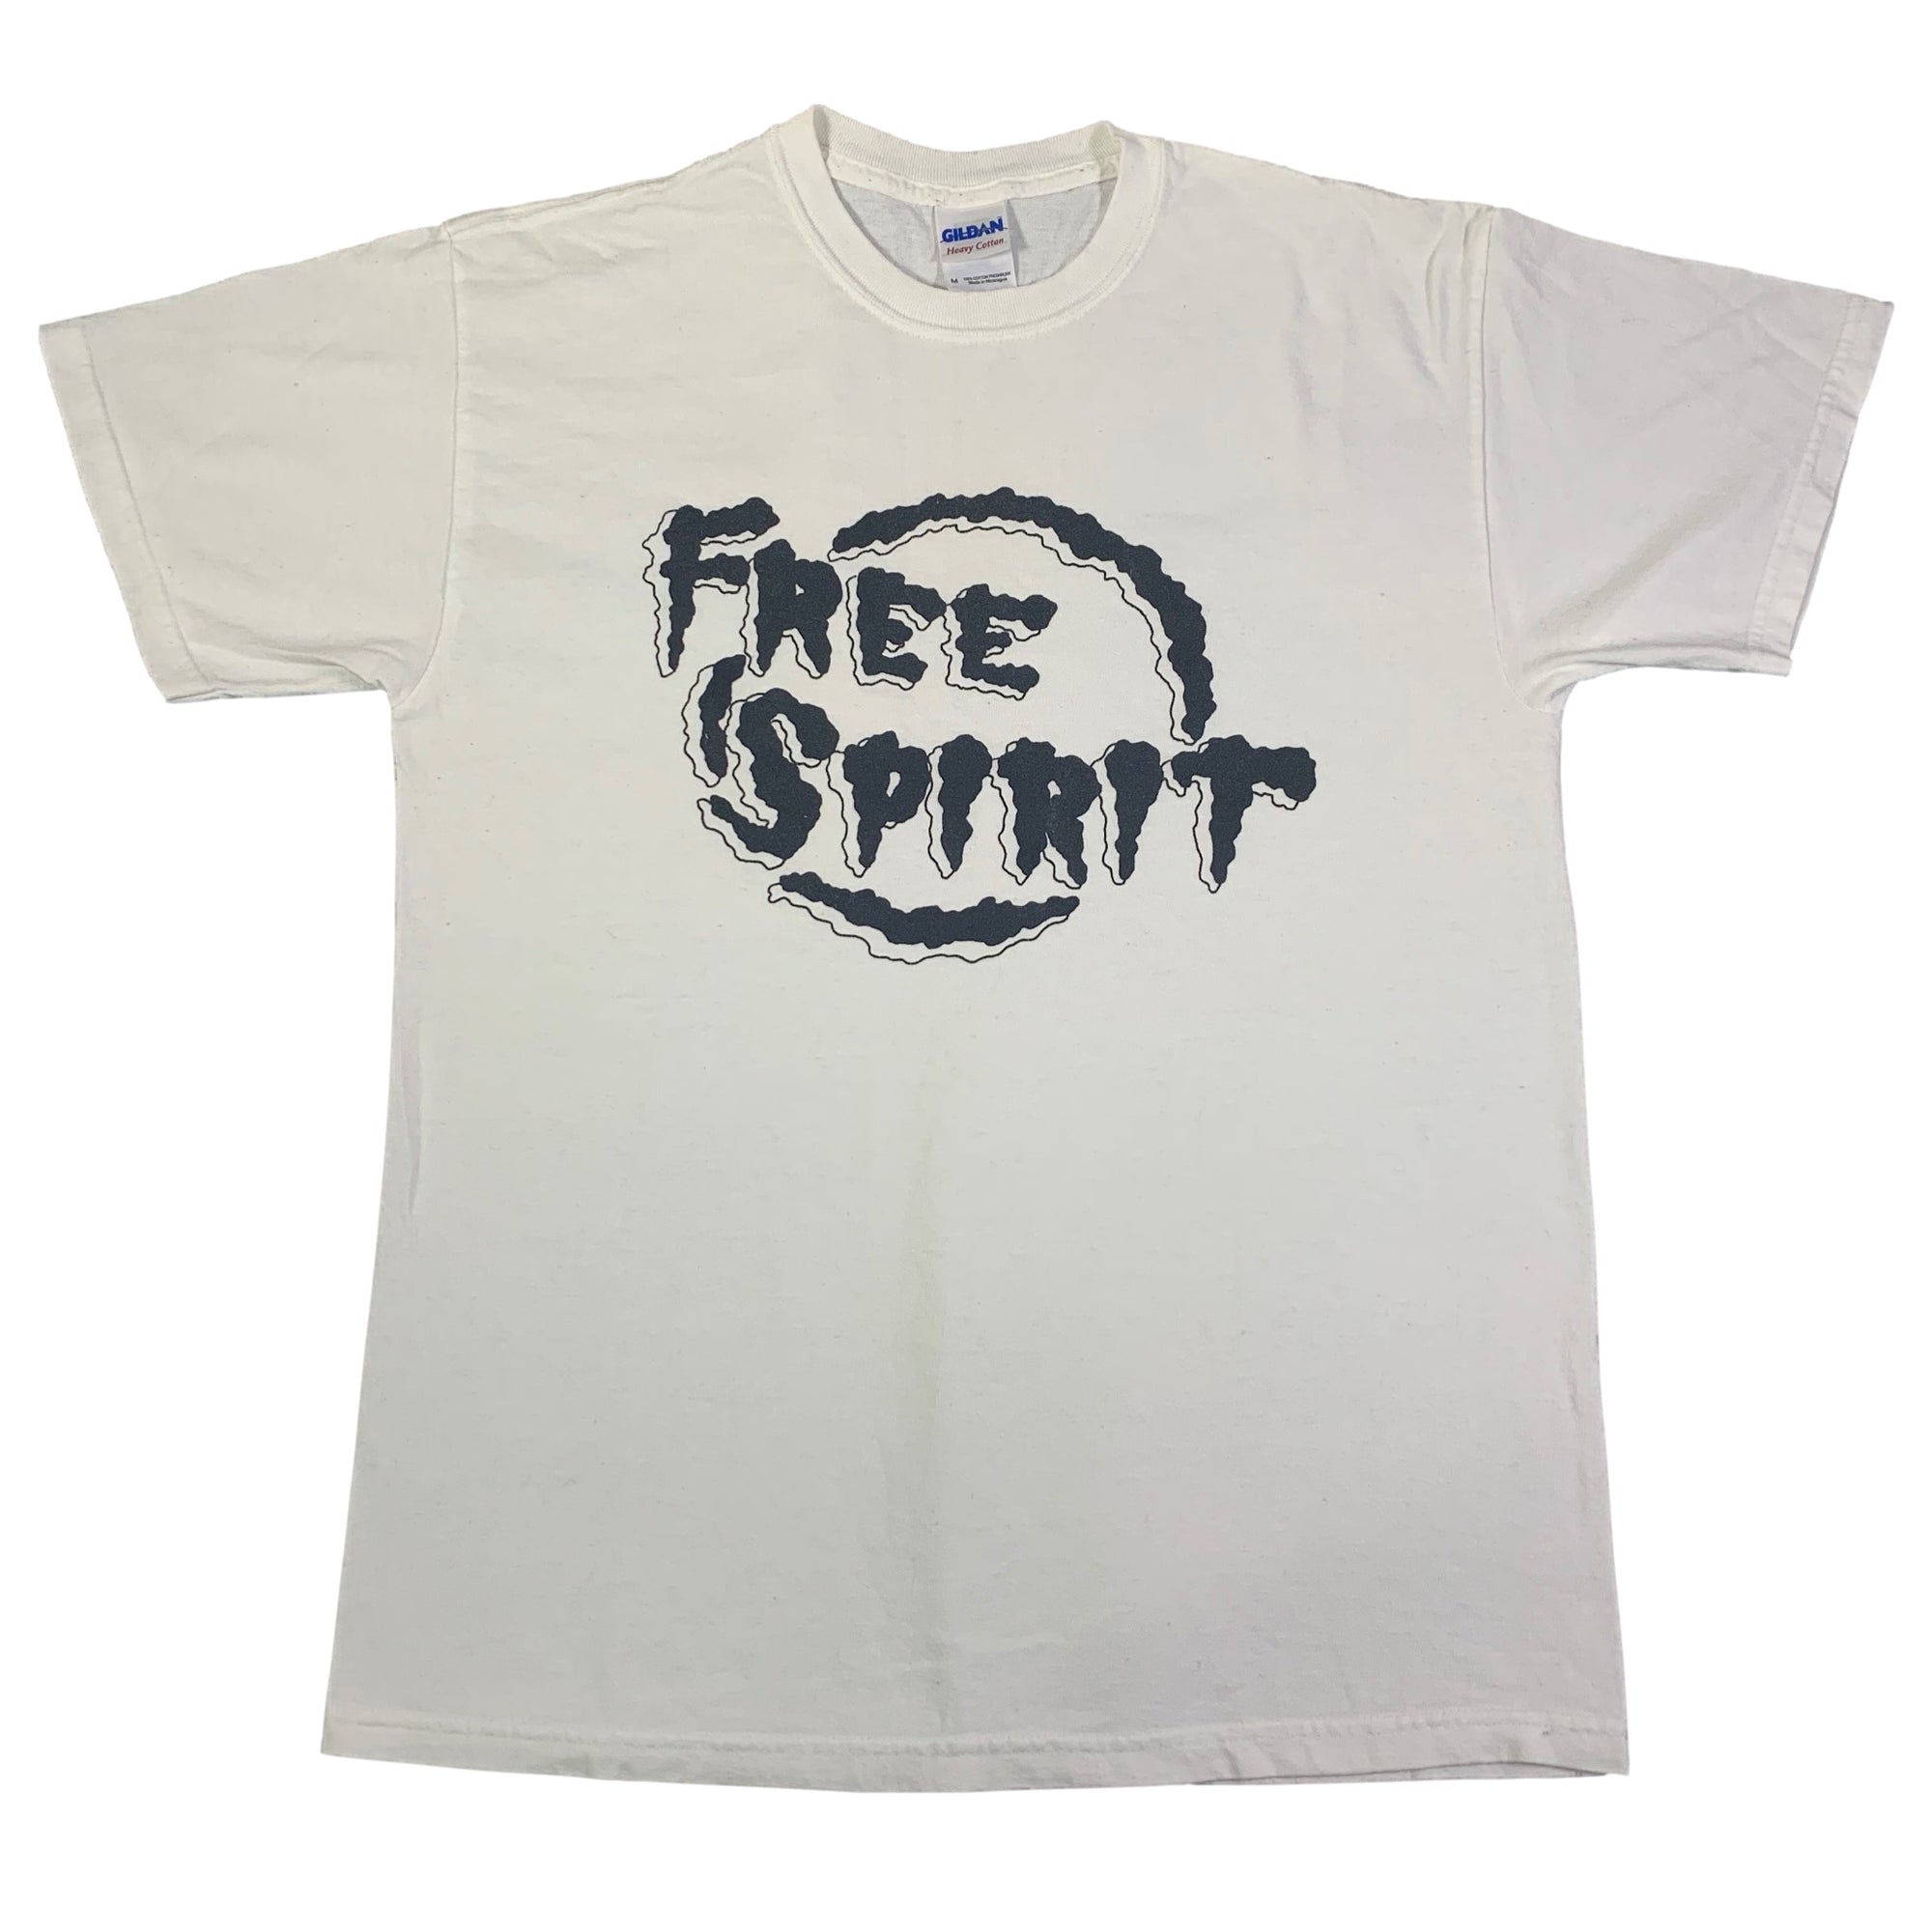 Vintage Free Spirit "Logo" T-Shirt - jointcustodydc